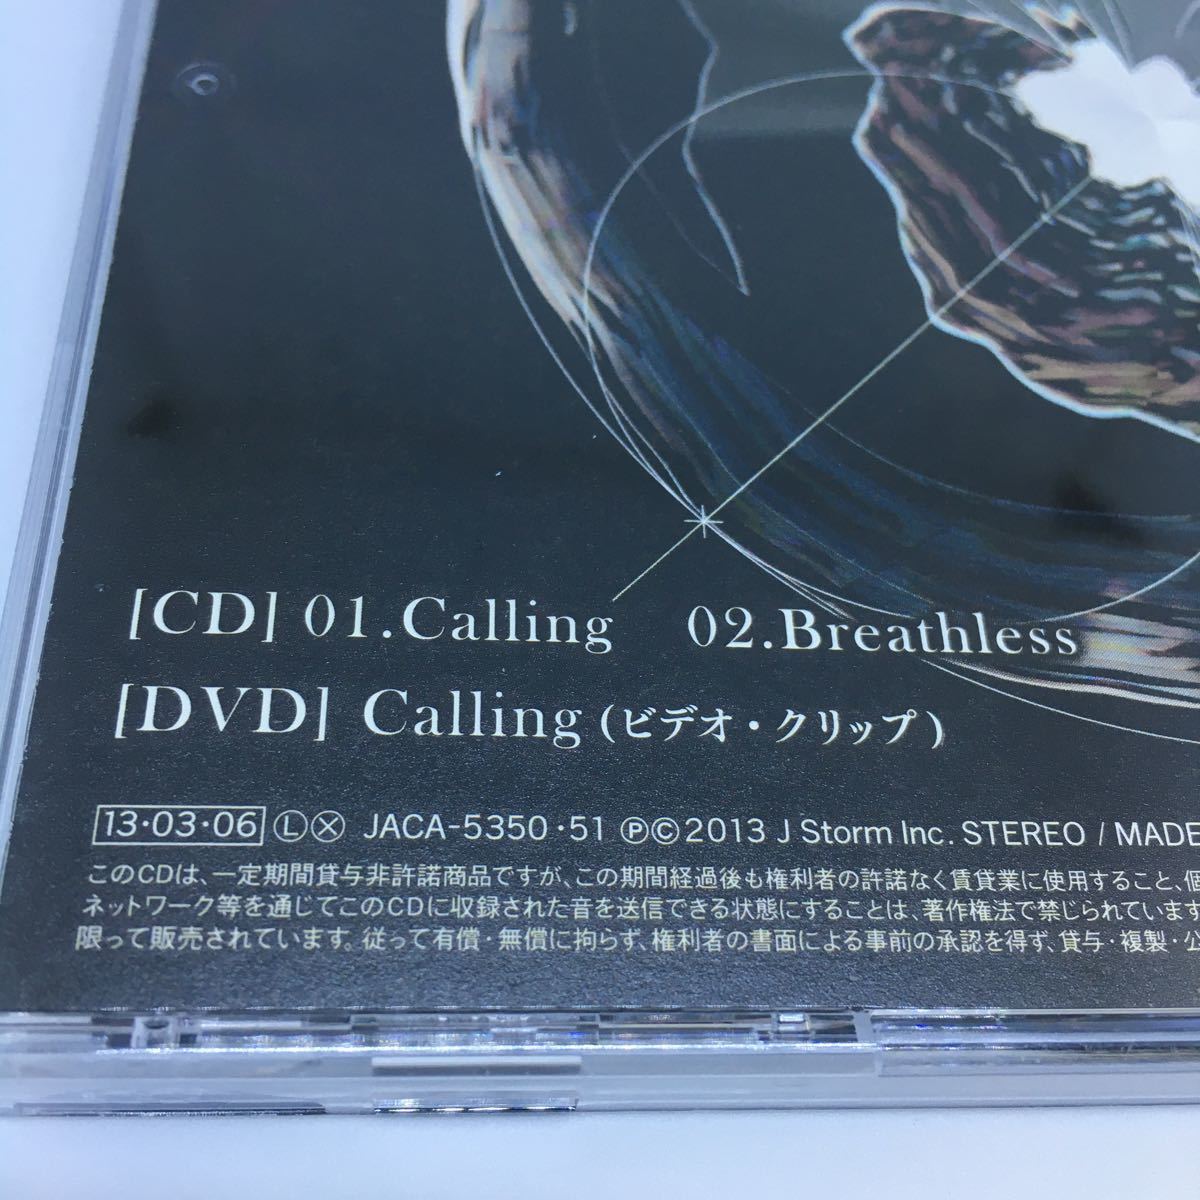 【送料120円~】嵐 Calling Breathless 初回盤A CD+DVD * シングル プラチナデータ ラストホープ 主題歌 初回限定盤A PV ARASHI 邦楽 J-POP_画像6